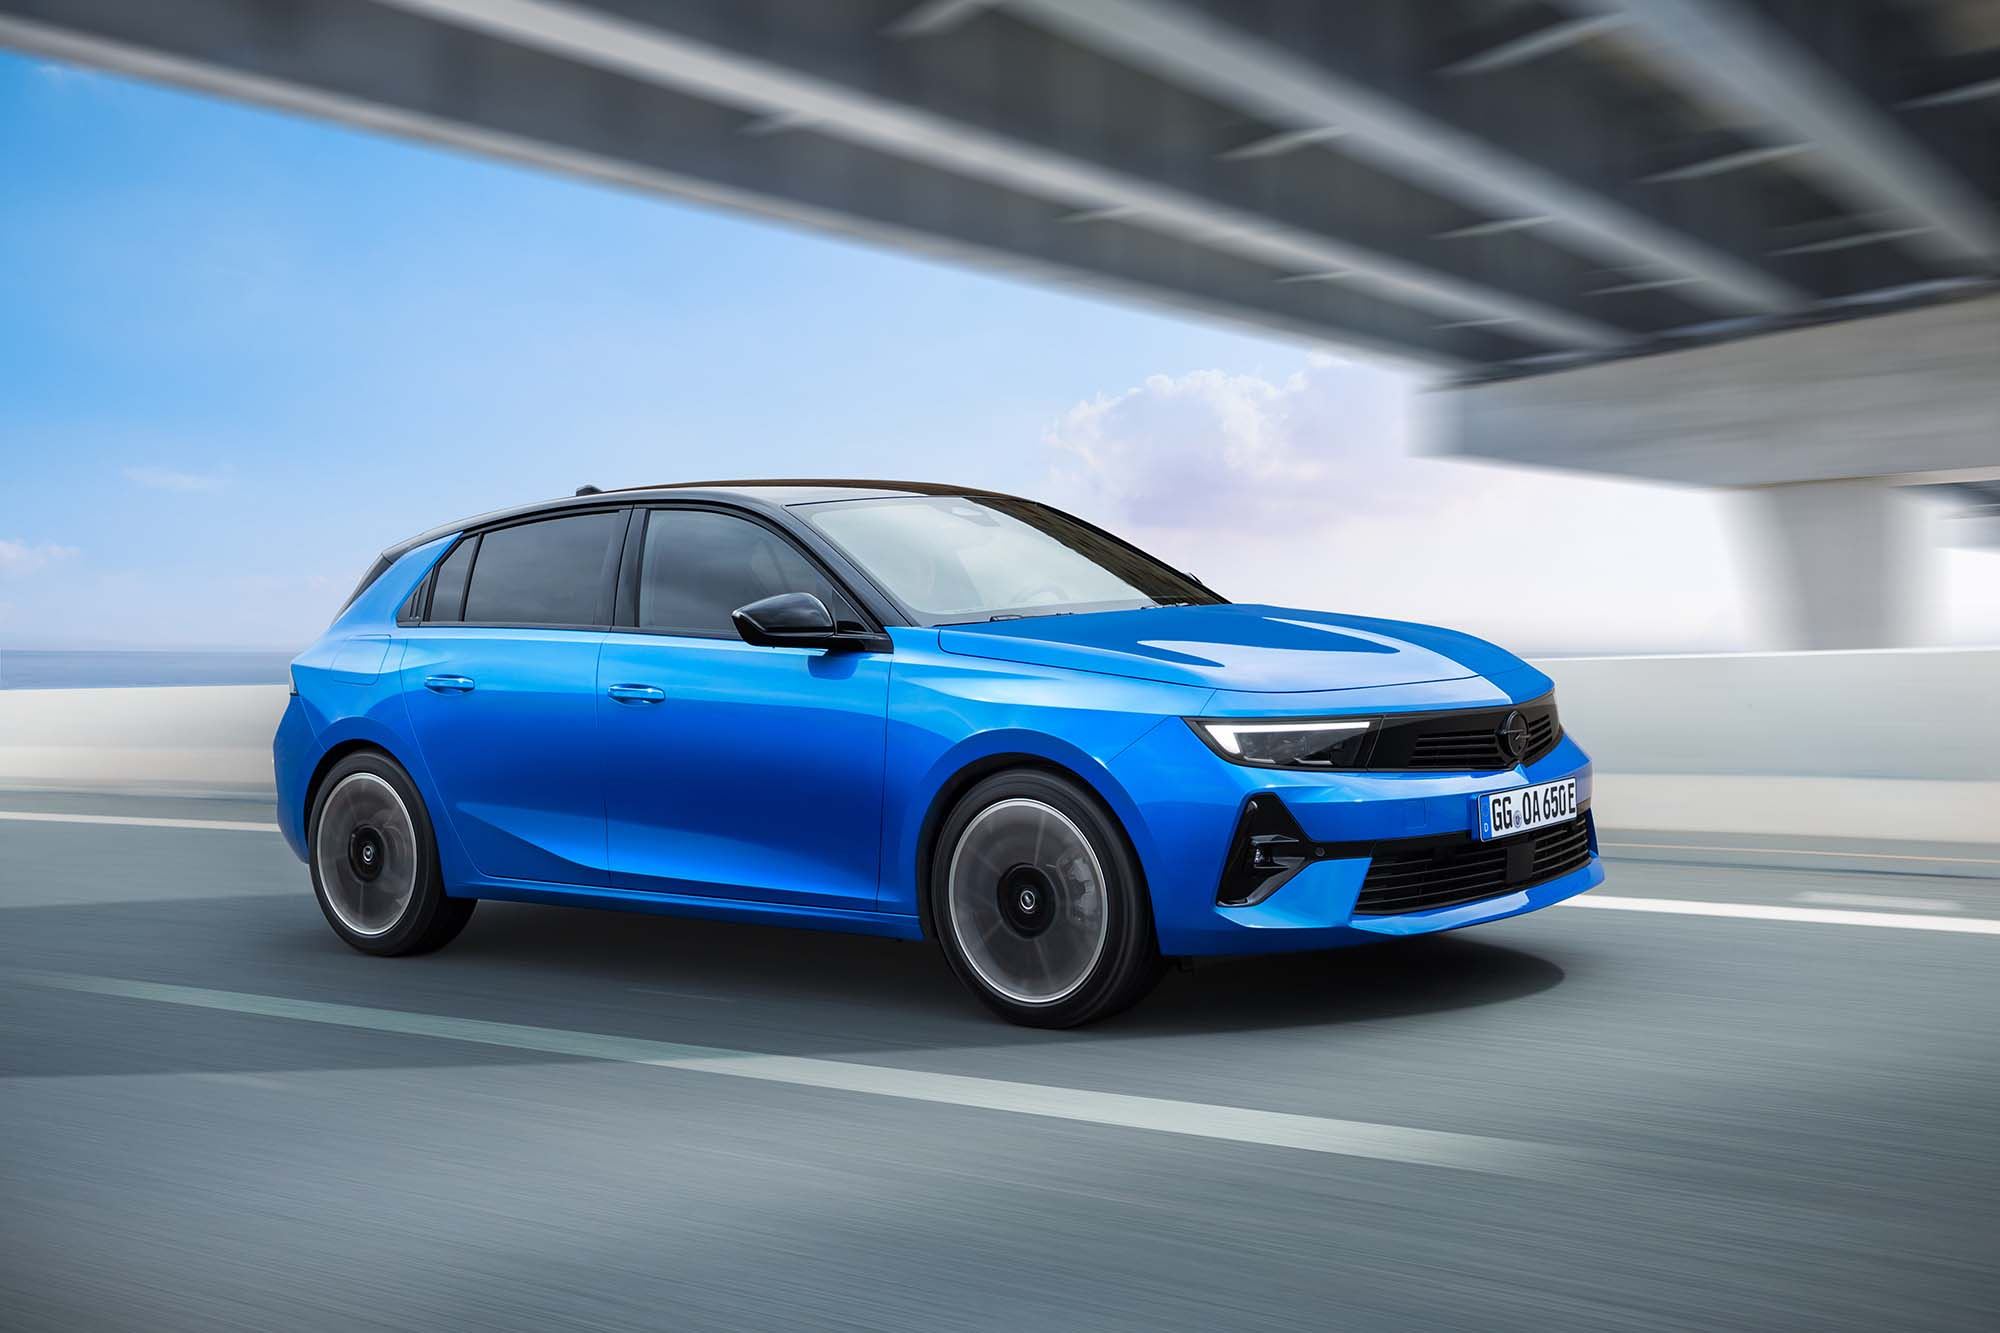 Prijzen nieuwe Opel Astra Electric bekend